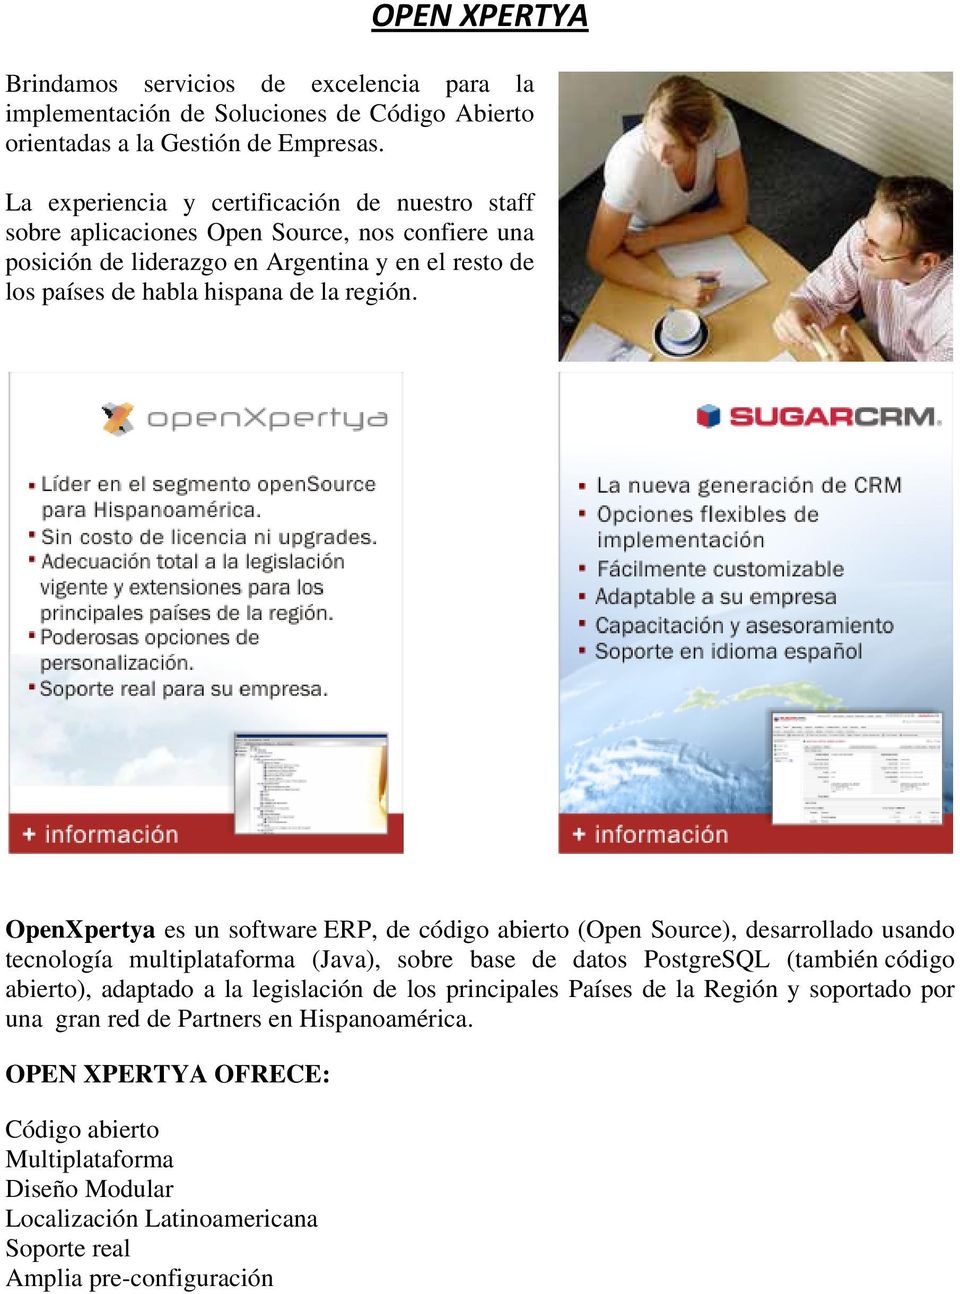 OpenXpertya es un software ERP, de código abierto (Open Source), desarrollado usando tecnología multiplataforma (Java), sobre base de datos PostgreSQL (también código abierto), adaptado a la